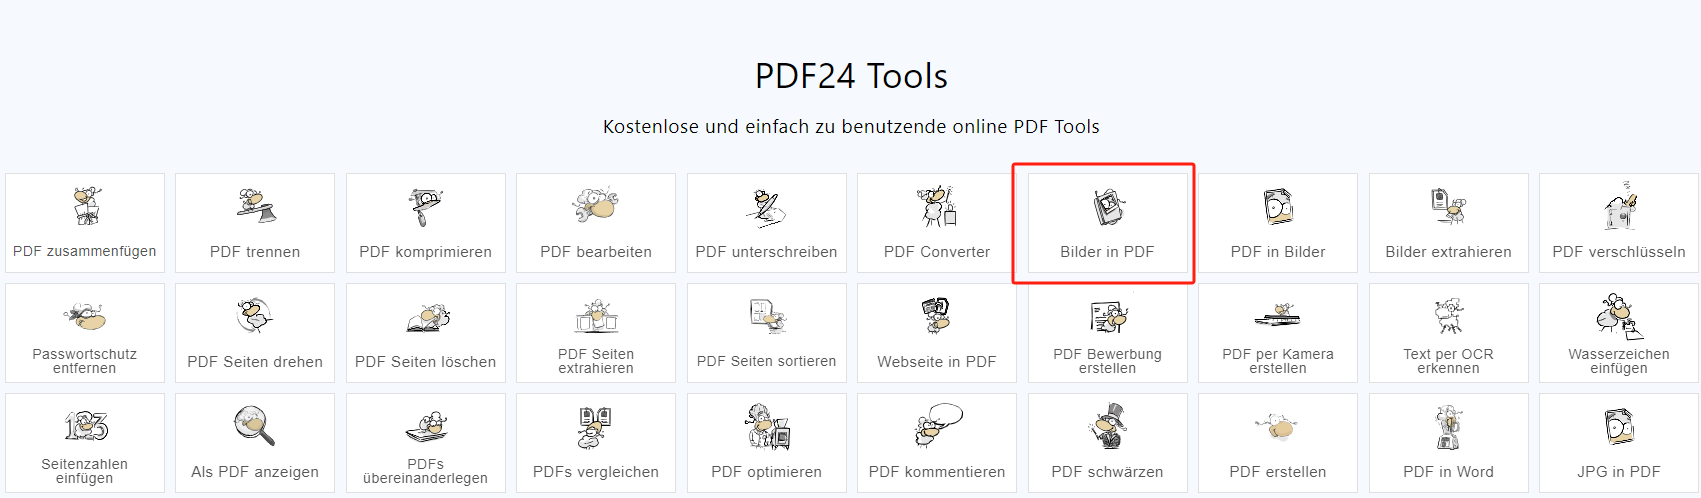 Besuchen Sie die offizielle Webseite von pdf24 und wählen Sie den „JPG in PDF“-Konverter. 